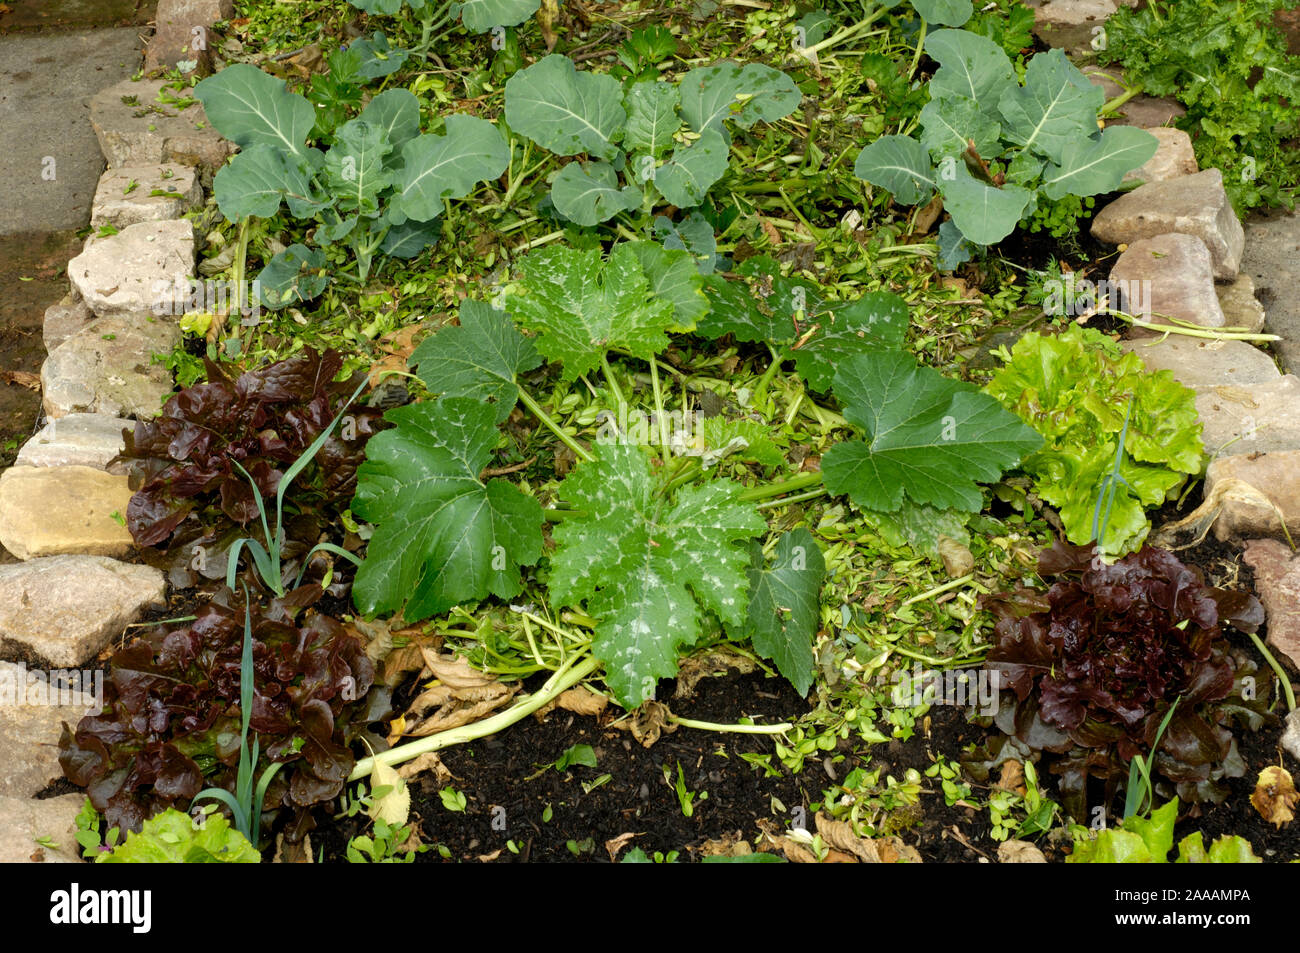 Bed of vegetables mulch | Gemuesebeet mit Salat und Kohl, gemulcht  / Stock Photo